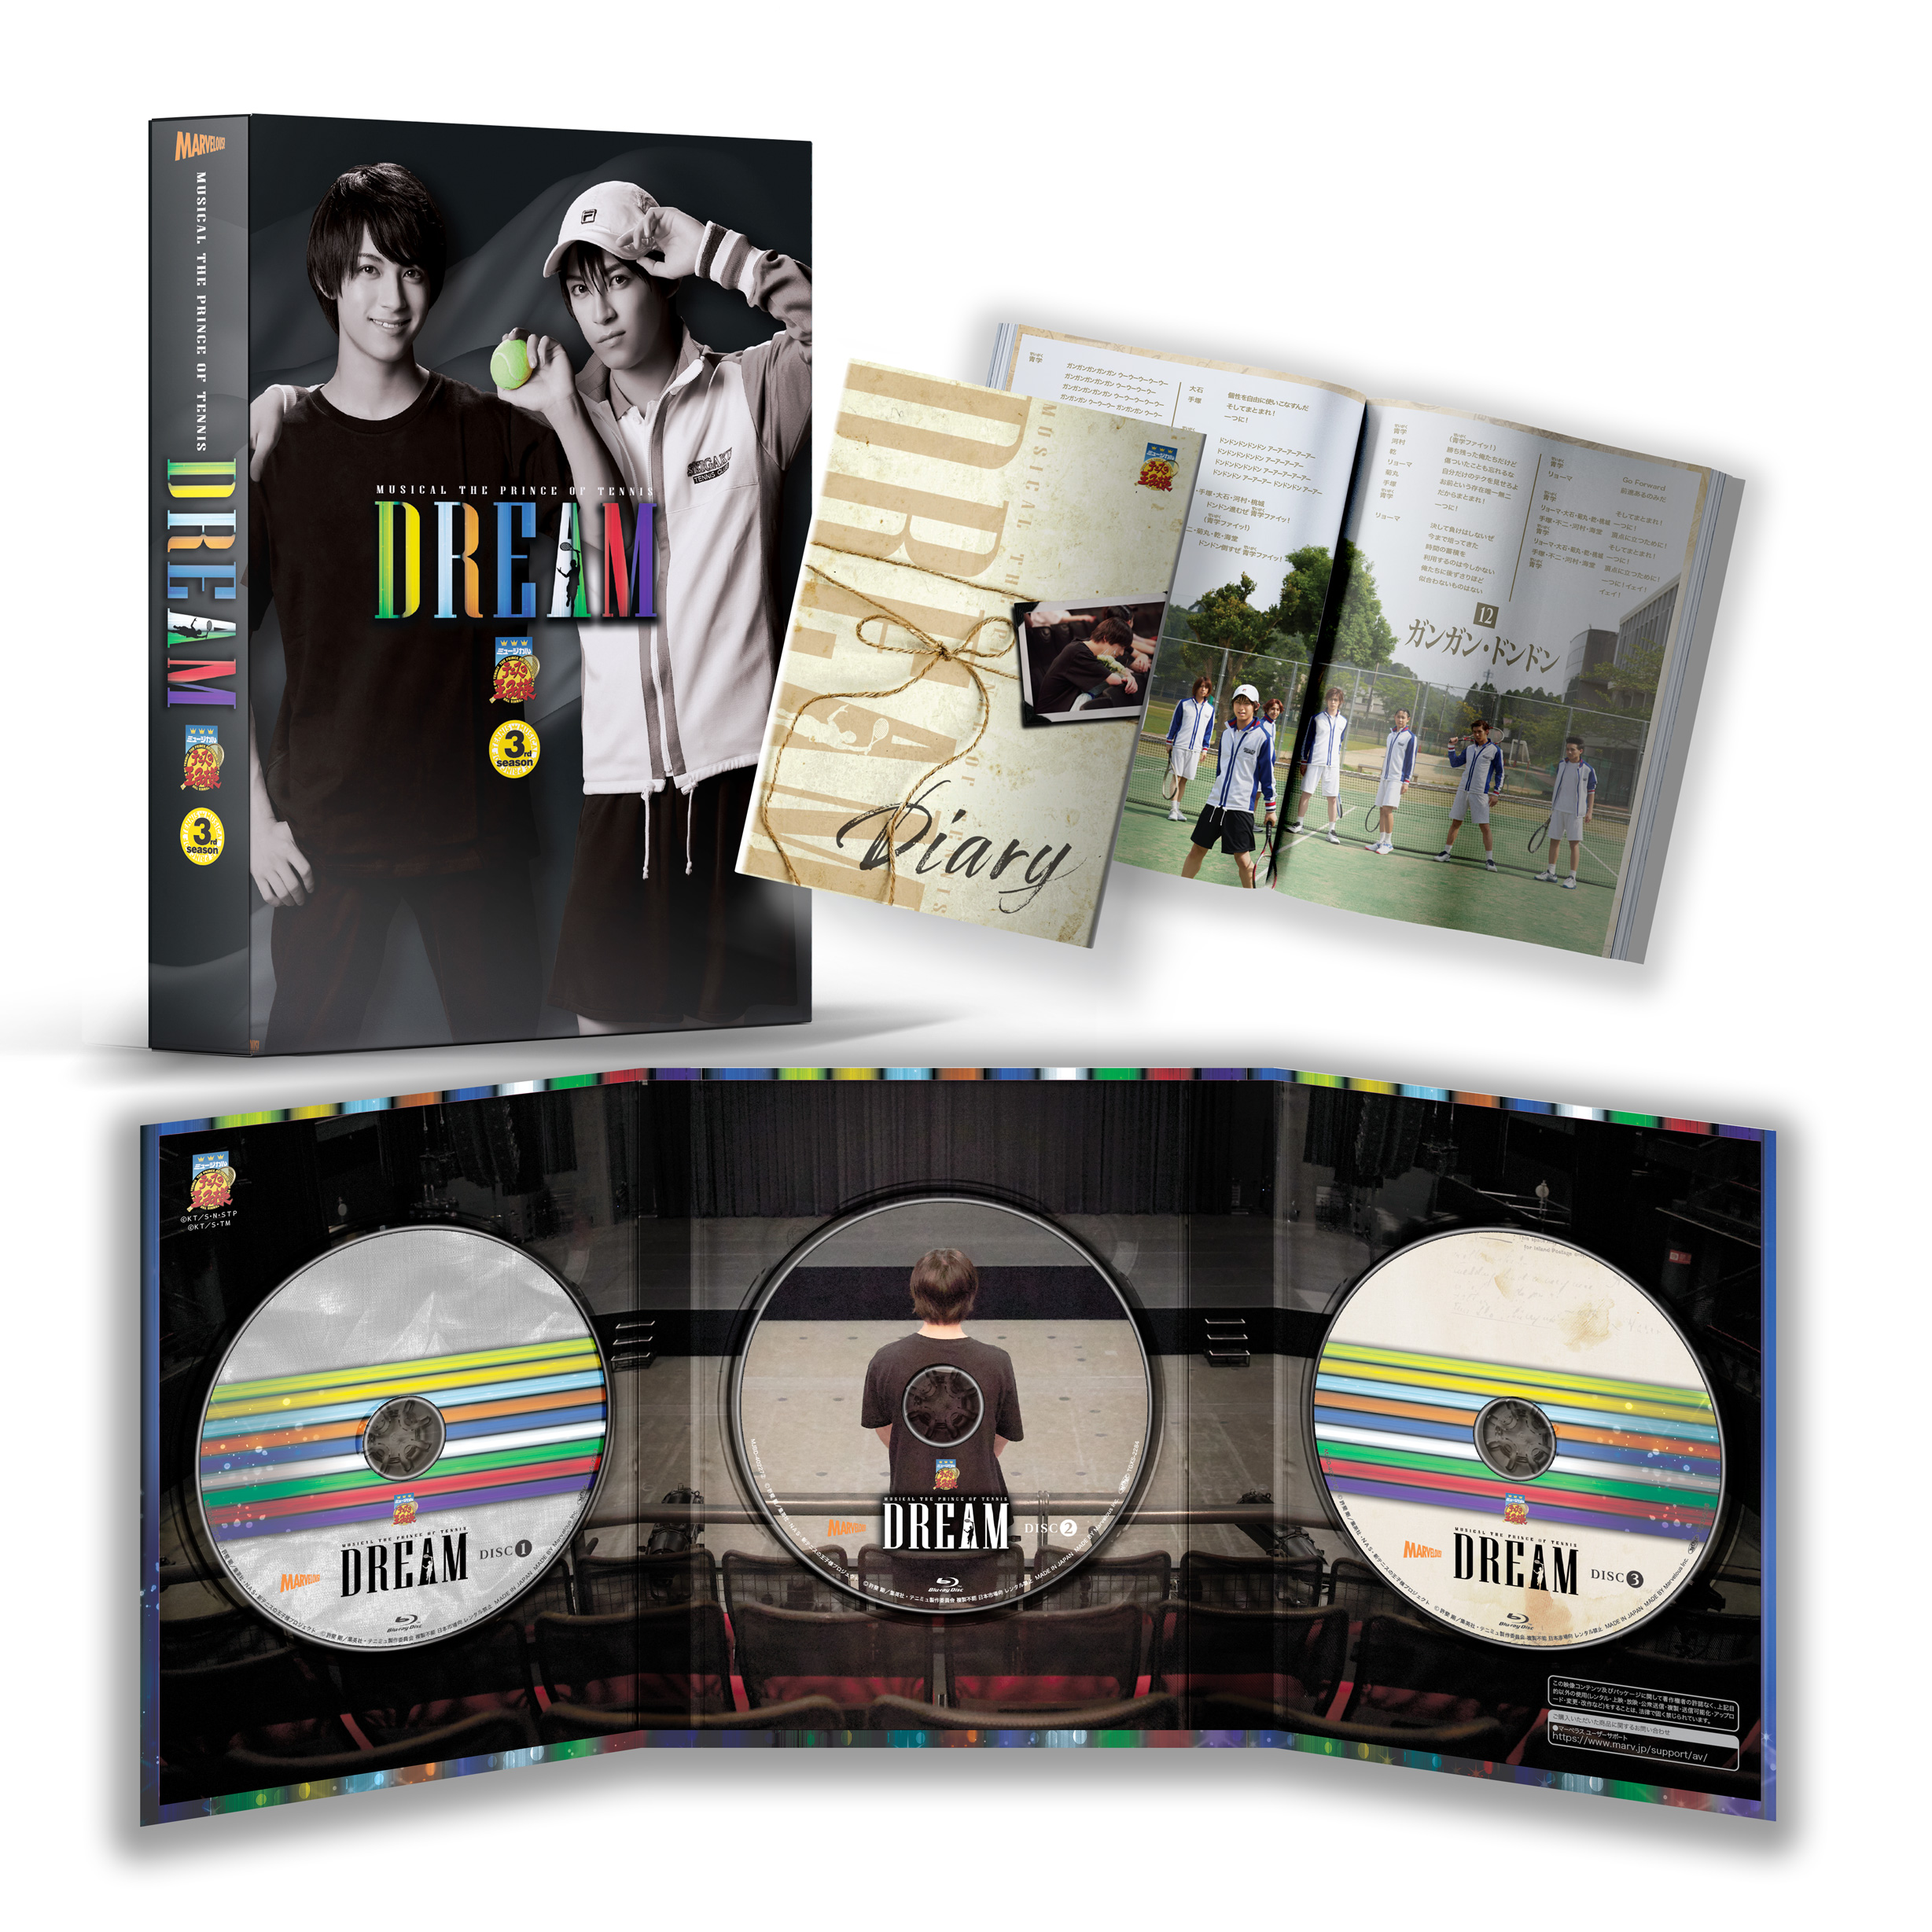 DVD】ミュージカル『テニスの王子様』Dream | ディスコグラフィー 